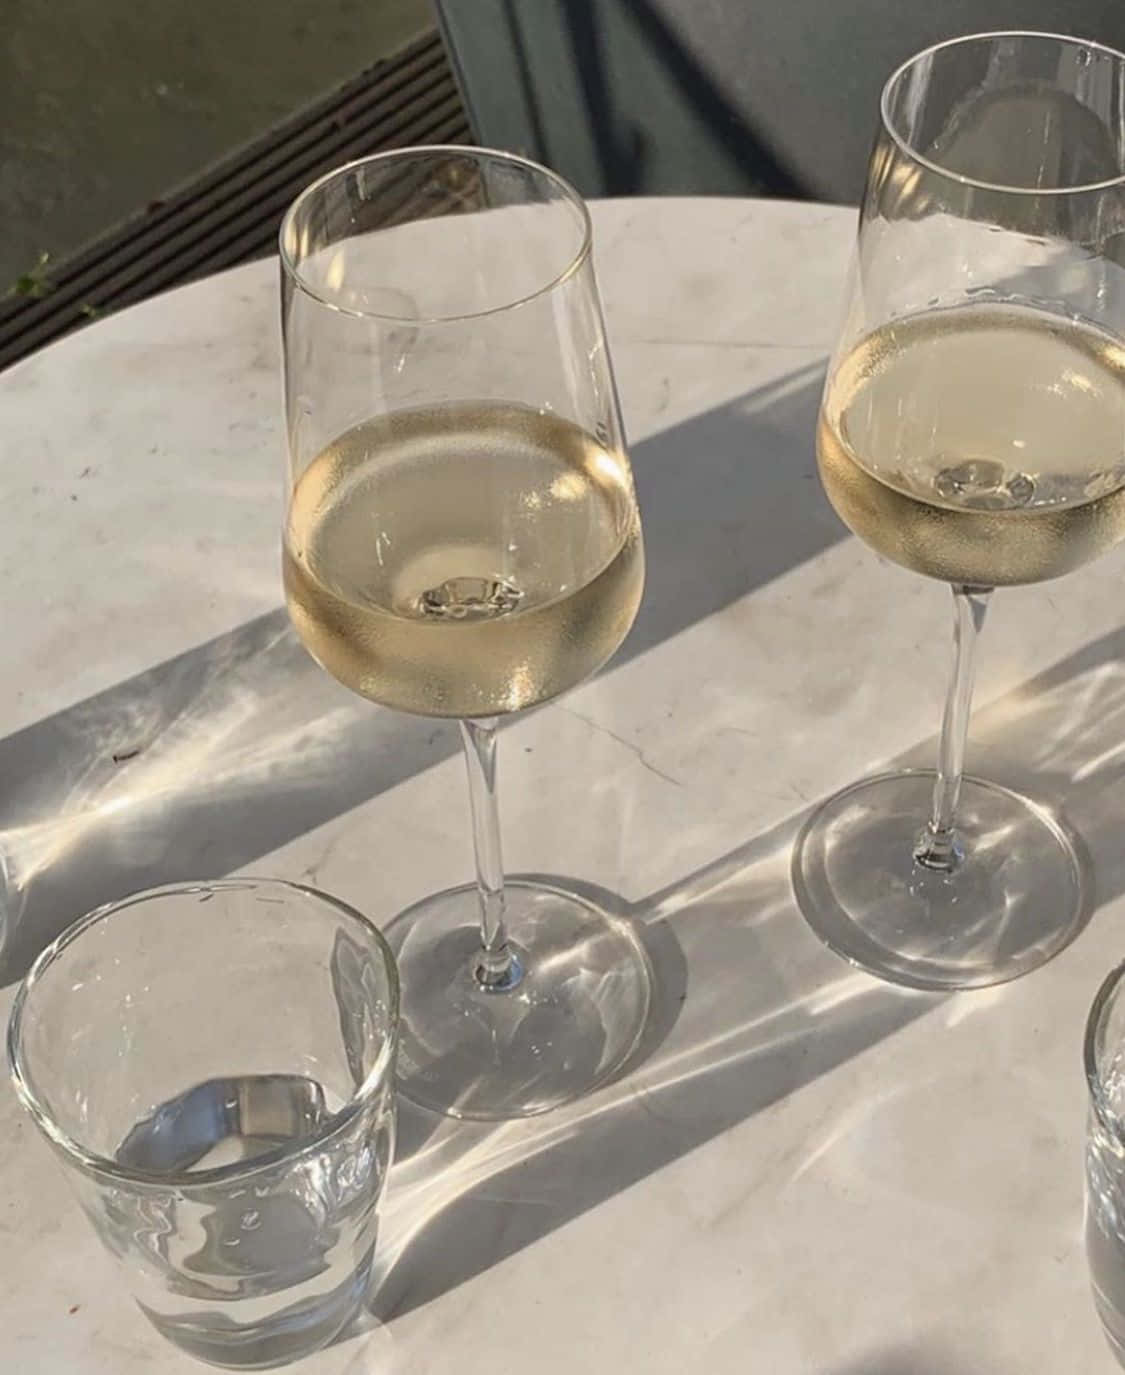 Refreshing glass of white wine Wallpaper